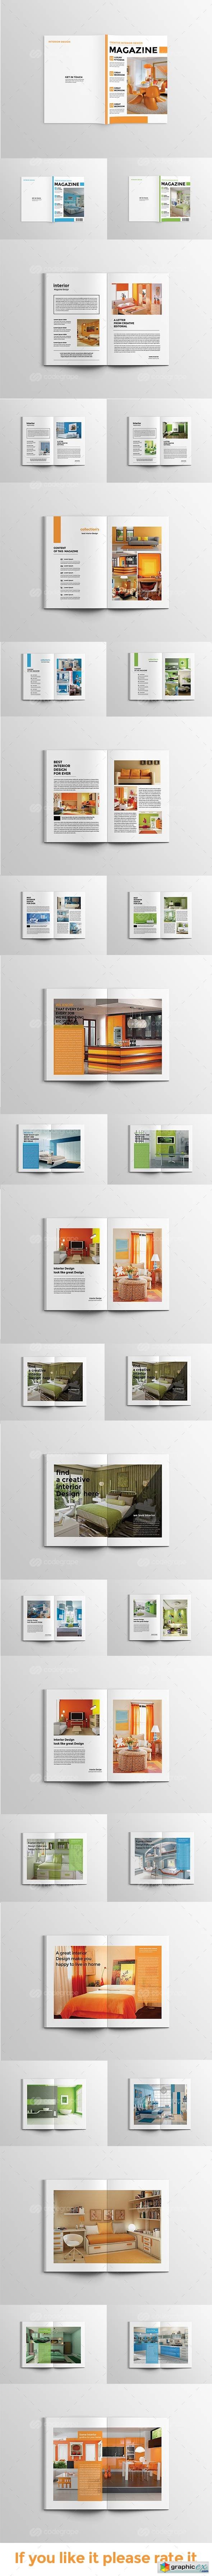 Magazine Design V2